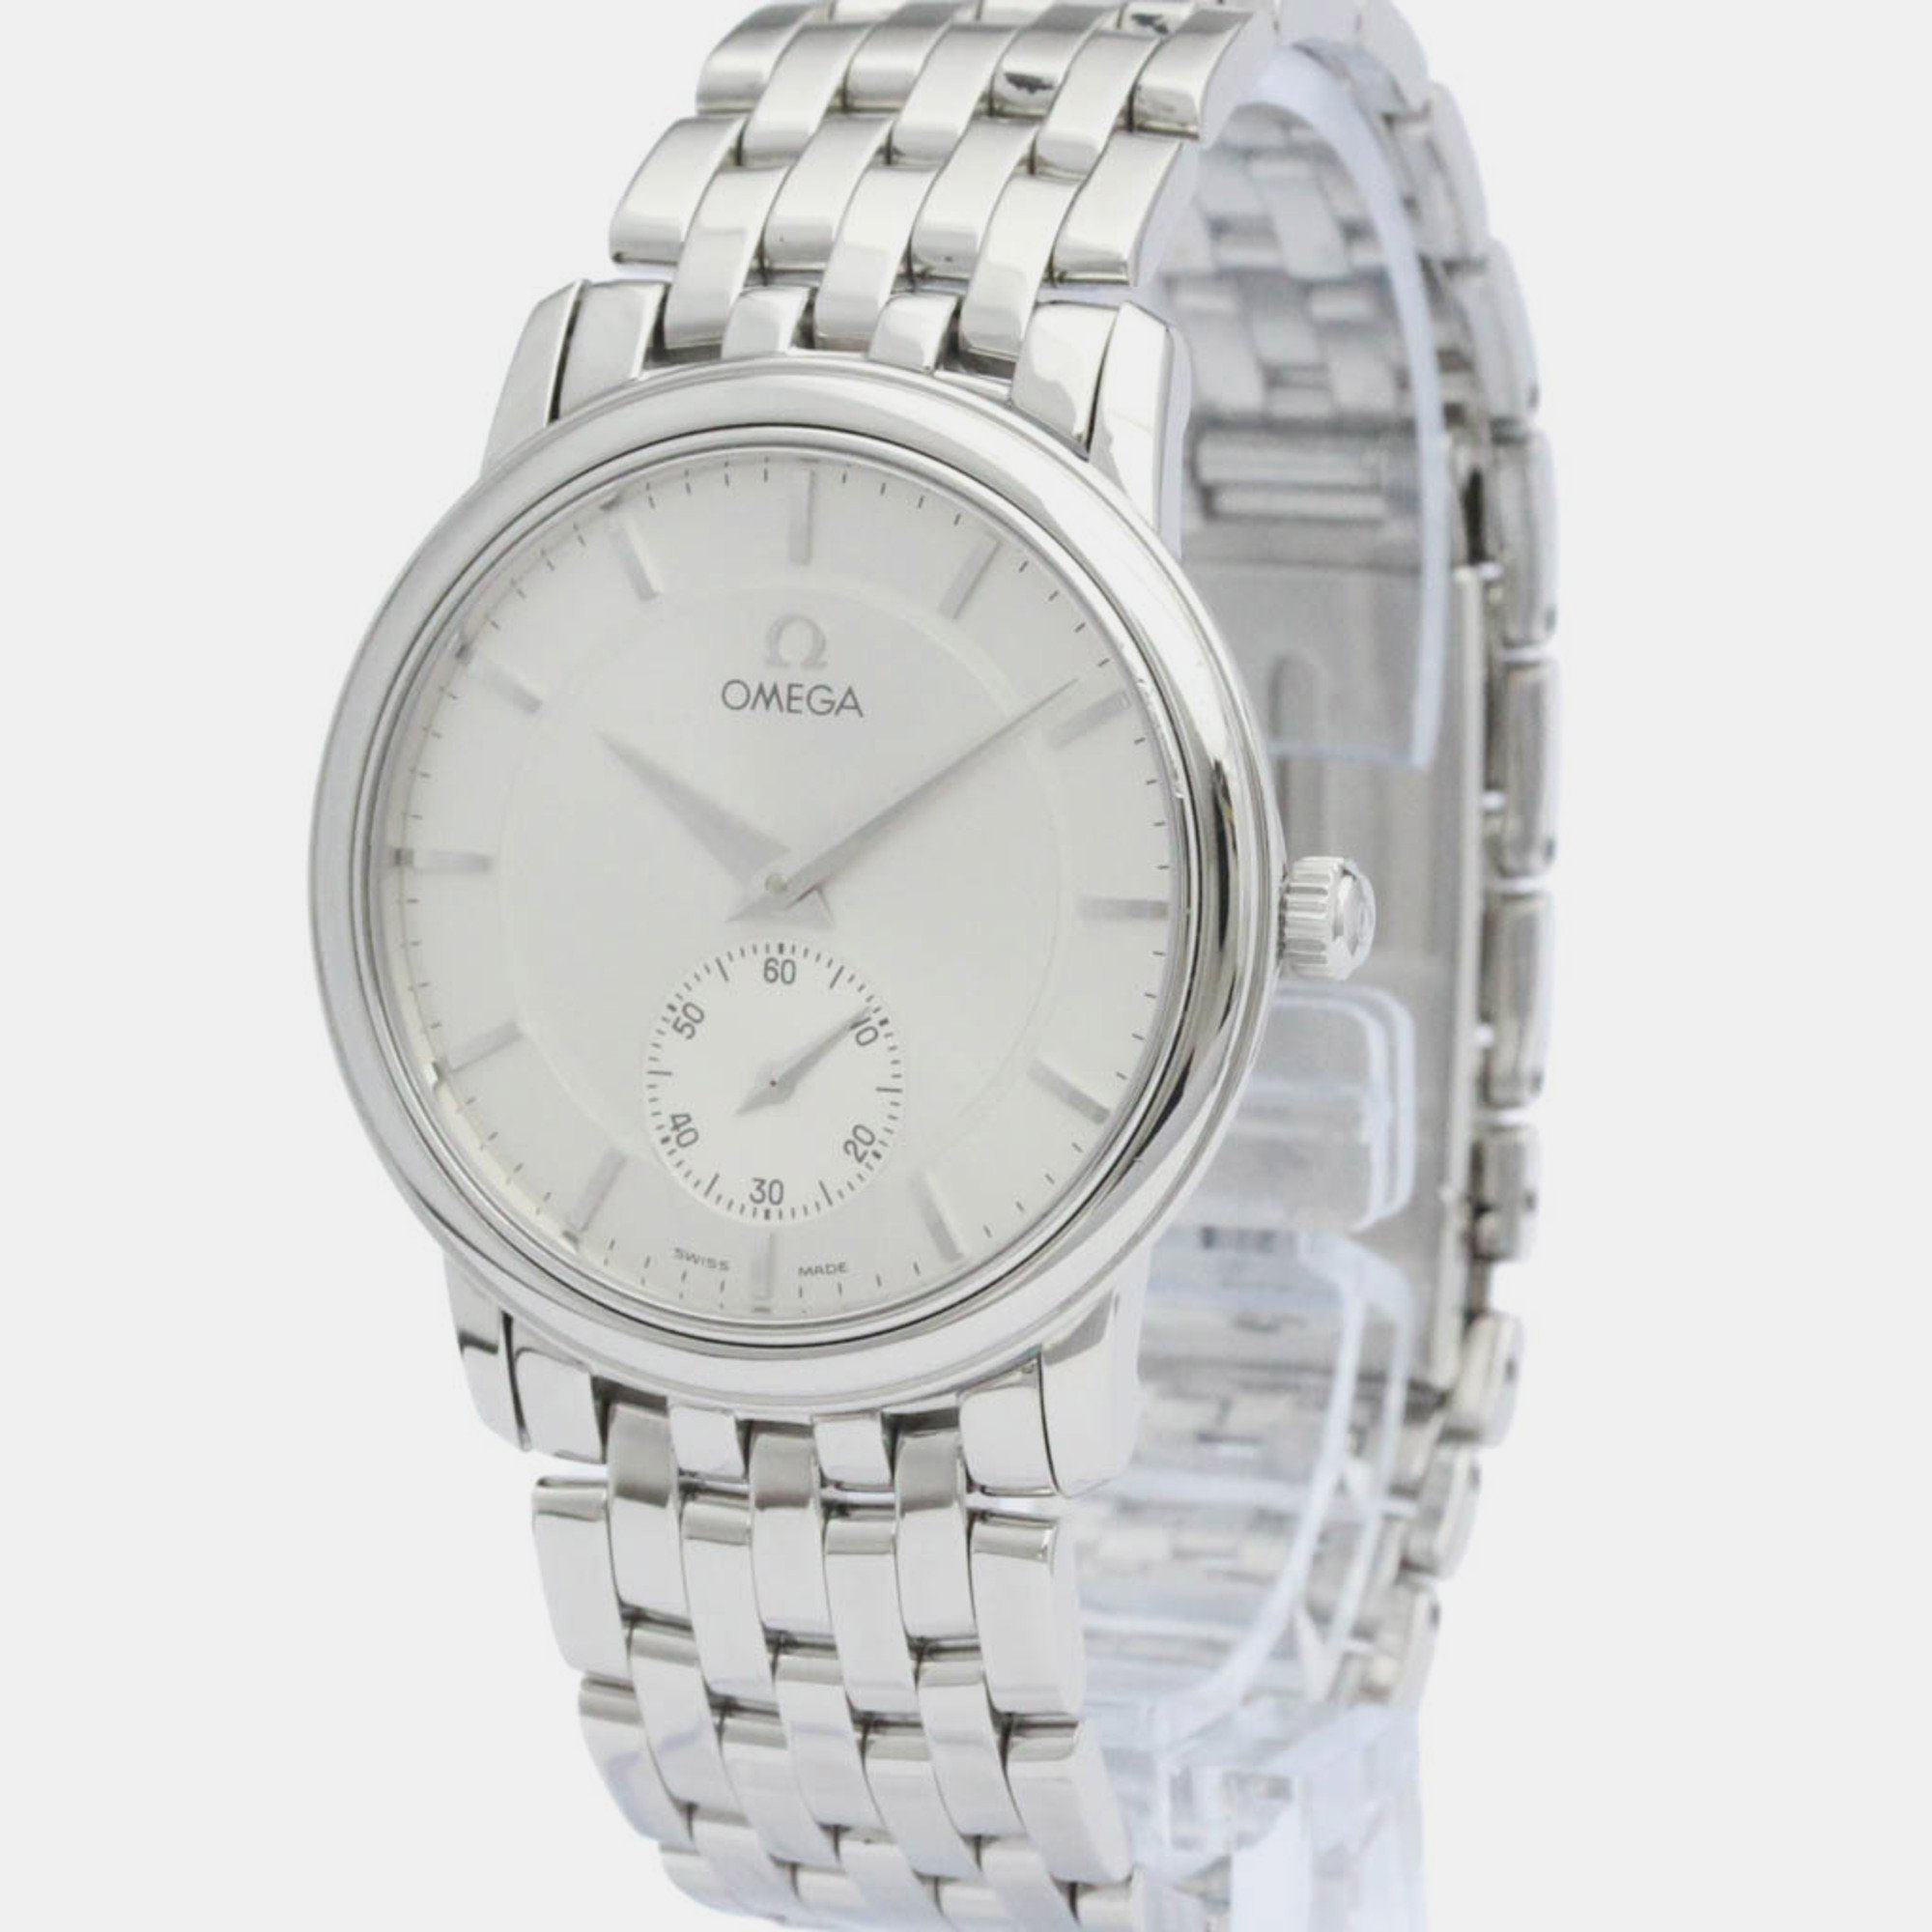 

Omega Silver Stainless Steel De Ville 4520.31 Manual Winding Men's Wristwatch 34 mm